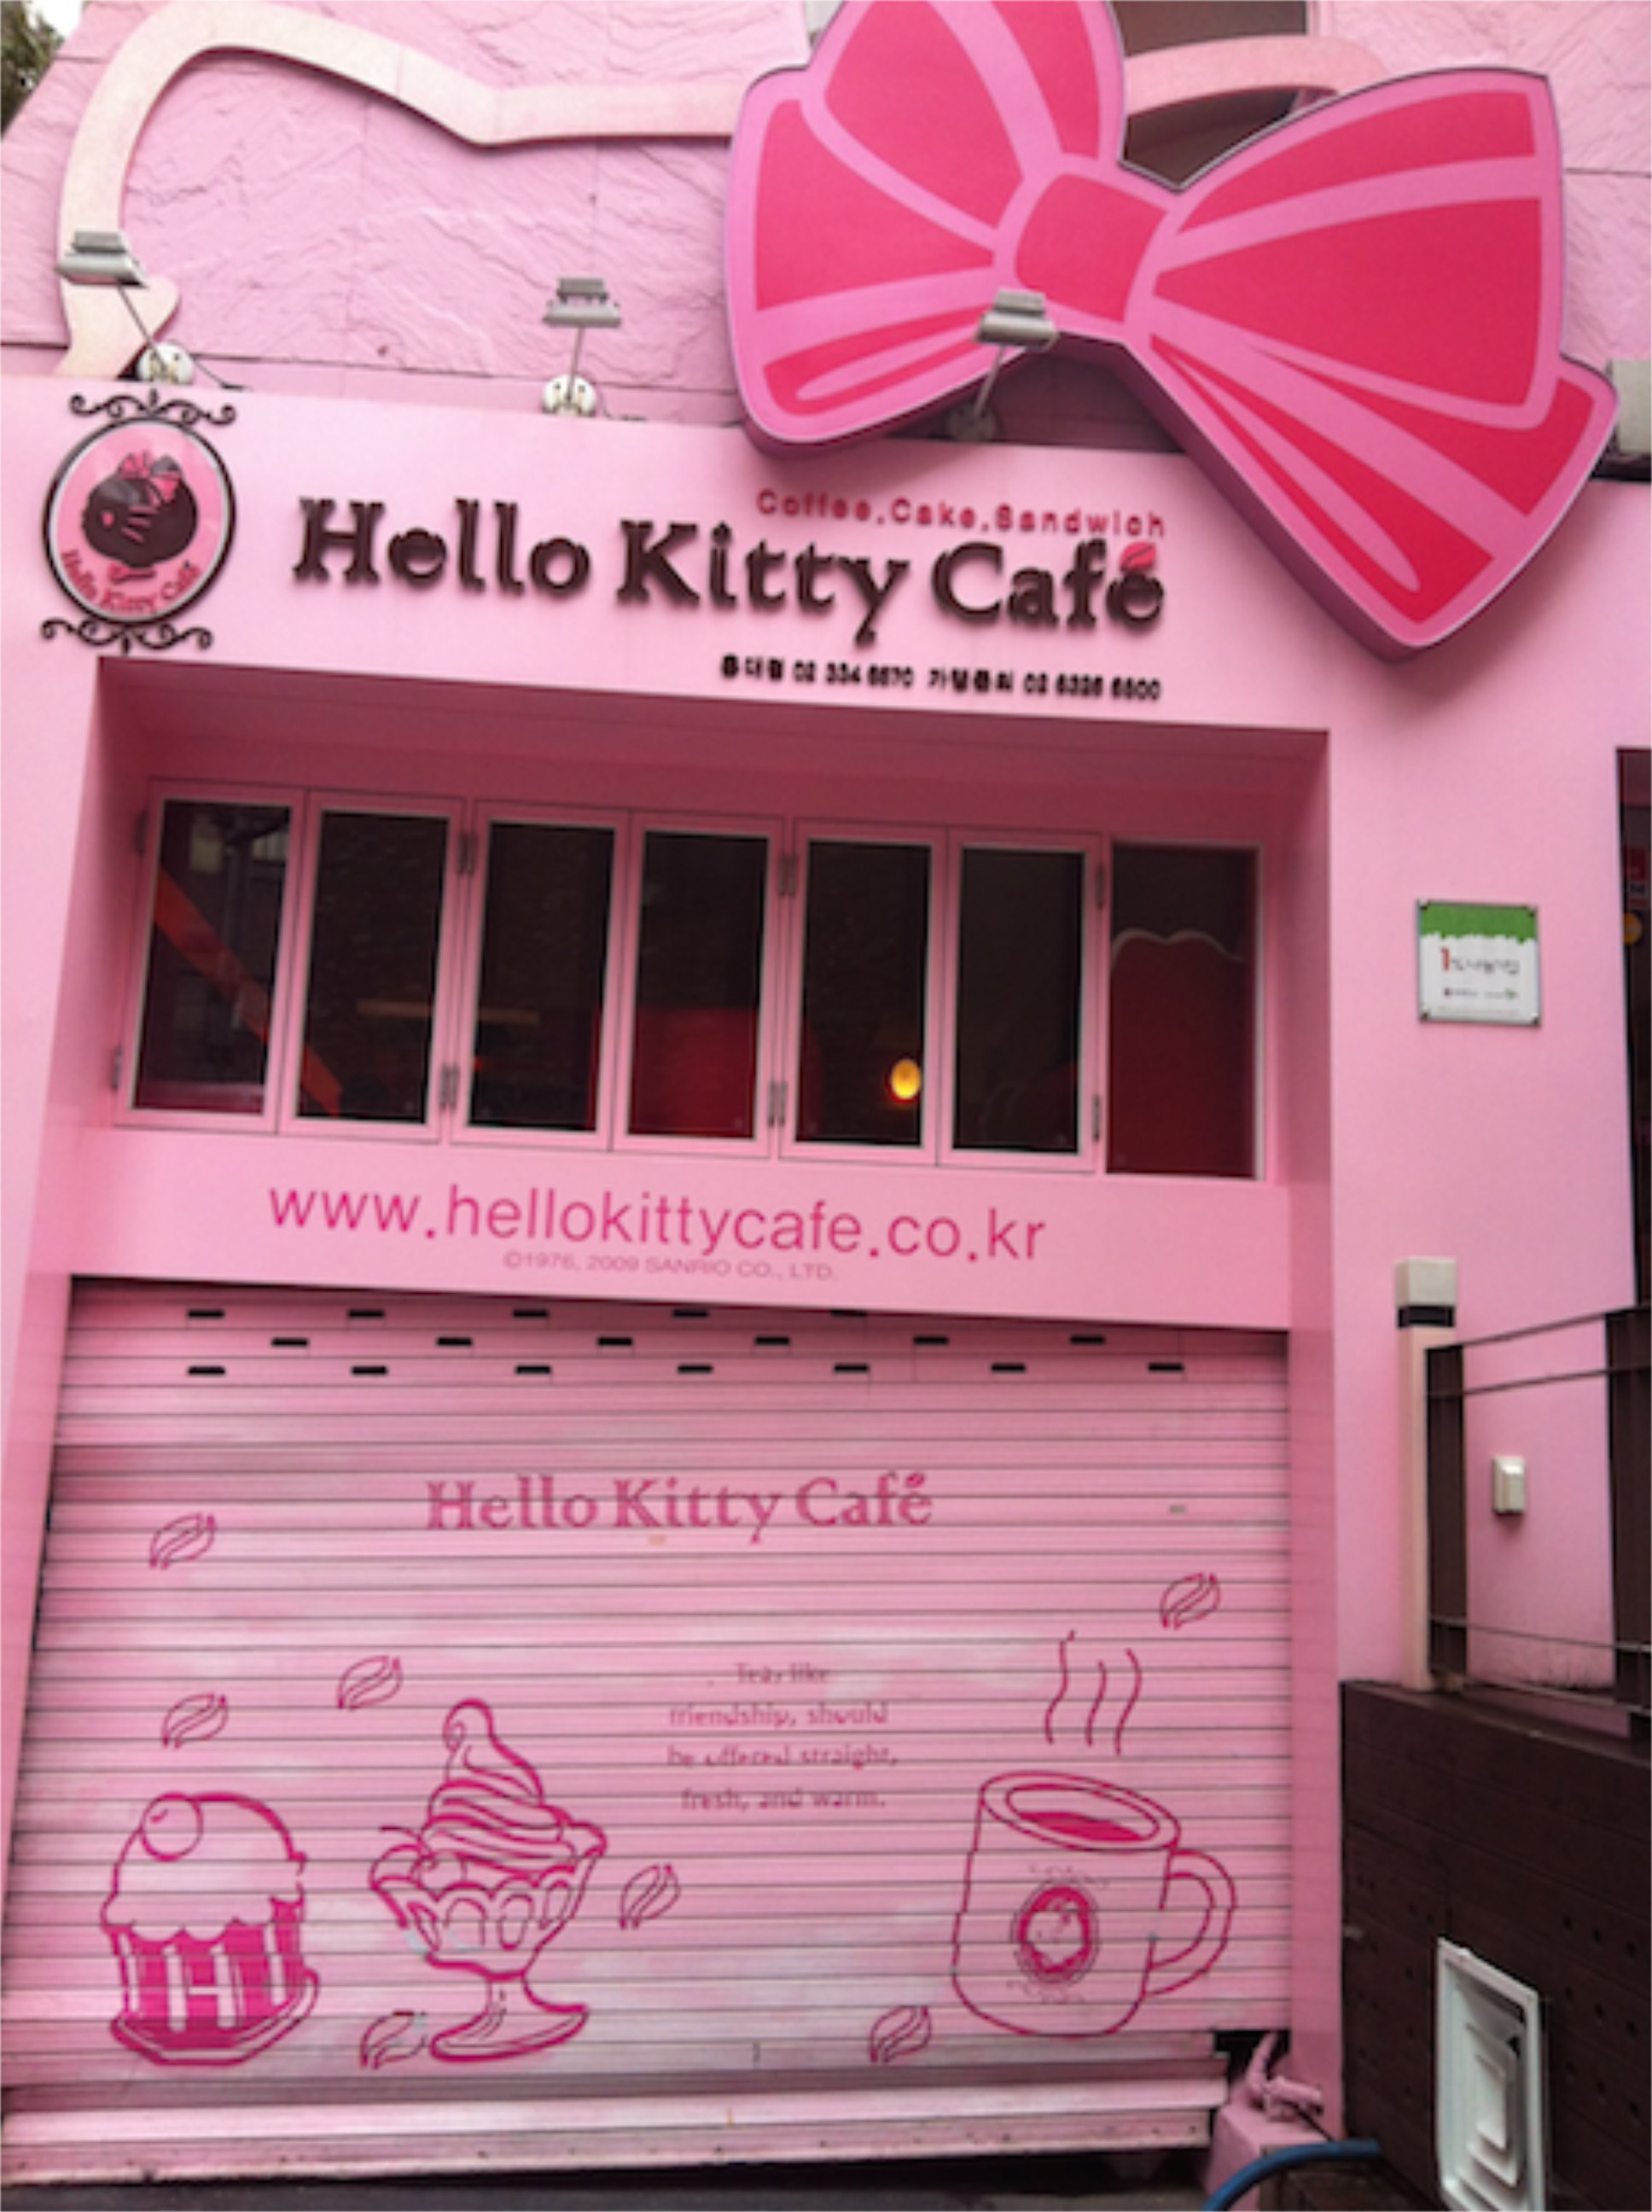 Hello Kitty Cafe, Seoul